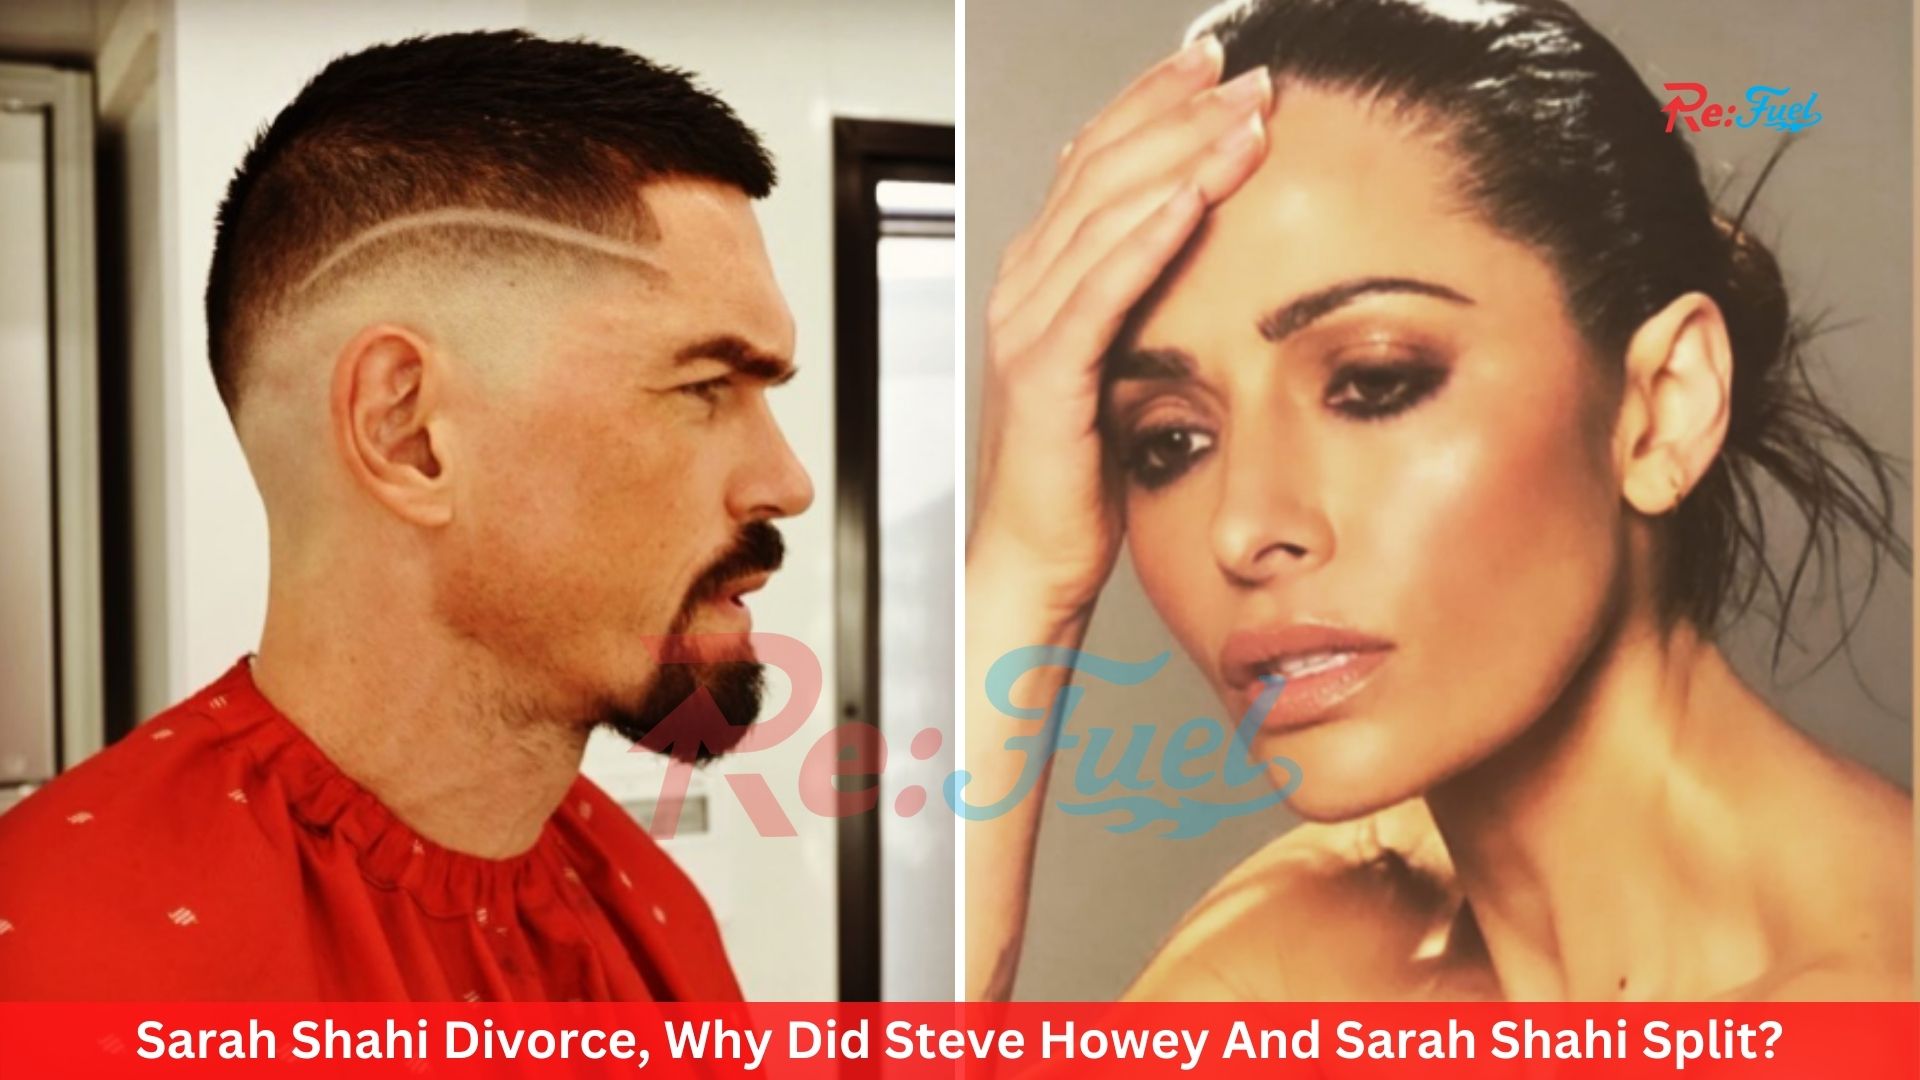 Sarah Shahi Divorce, Why Did Steve Howey And Sarah Shahi Split?